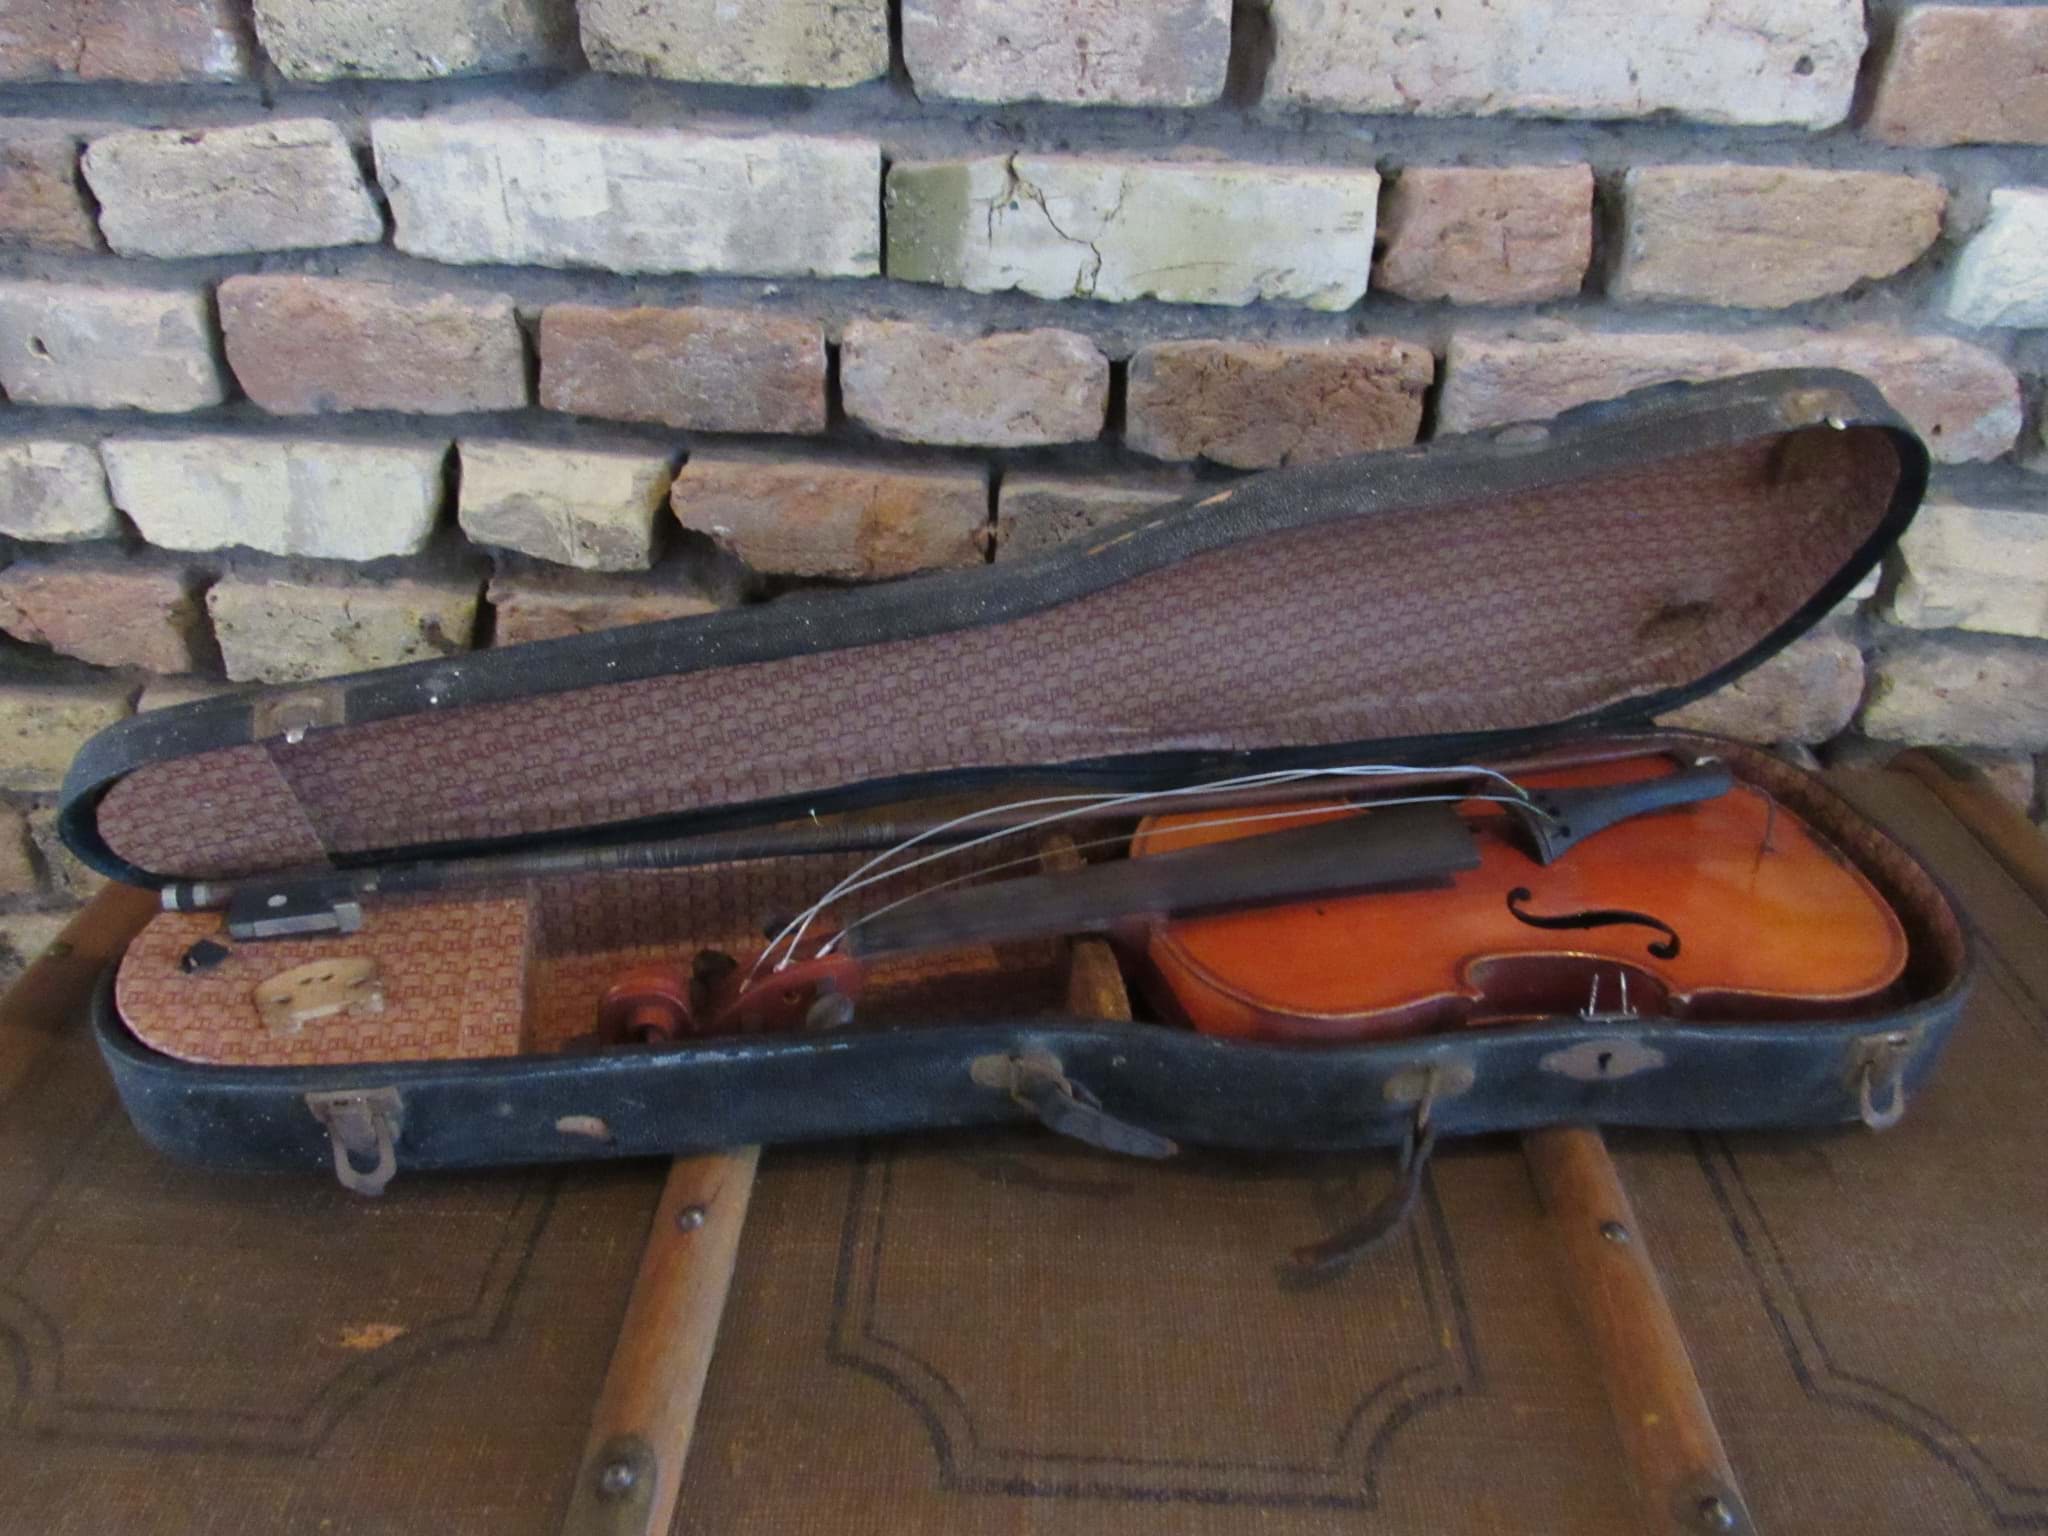 Picture of Antike Geige / Violine Medio Fino mit Geigenkasten, Restaurationsobjekt, Dachbodenfund um 1900